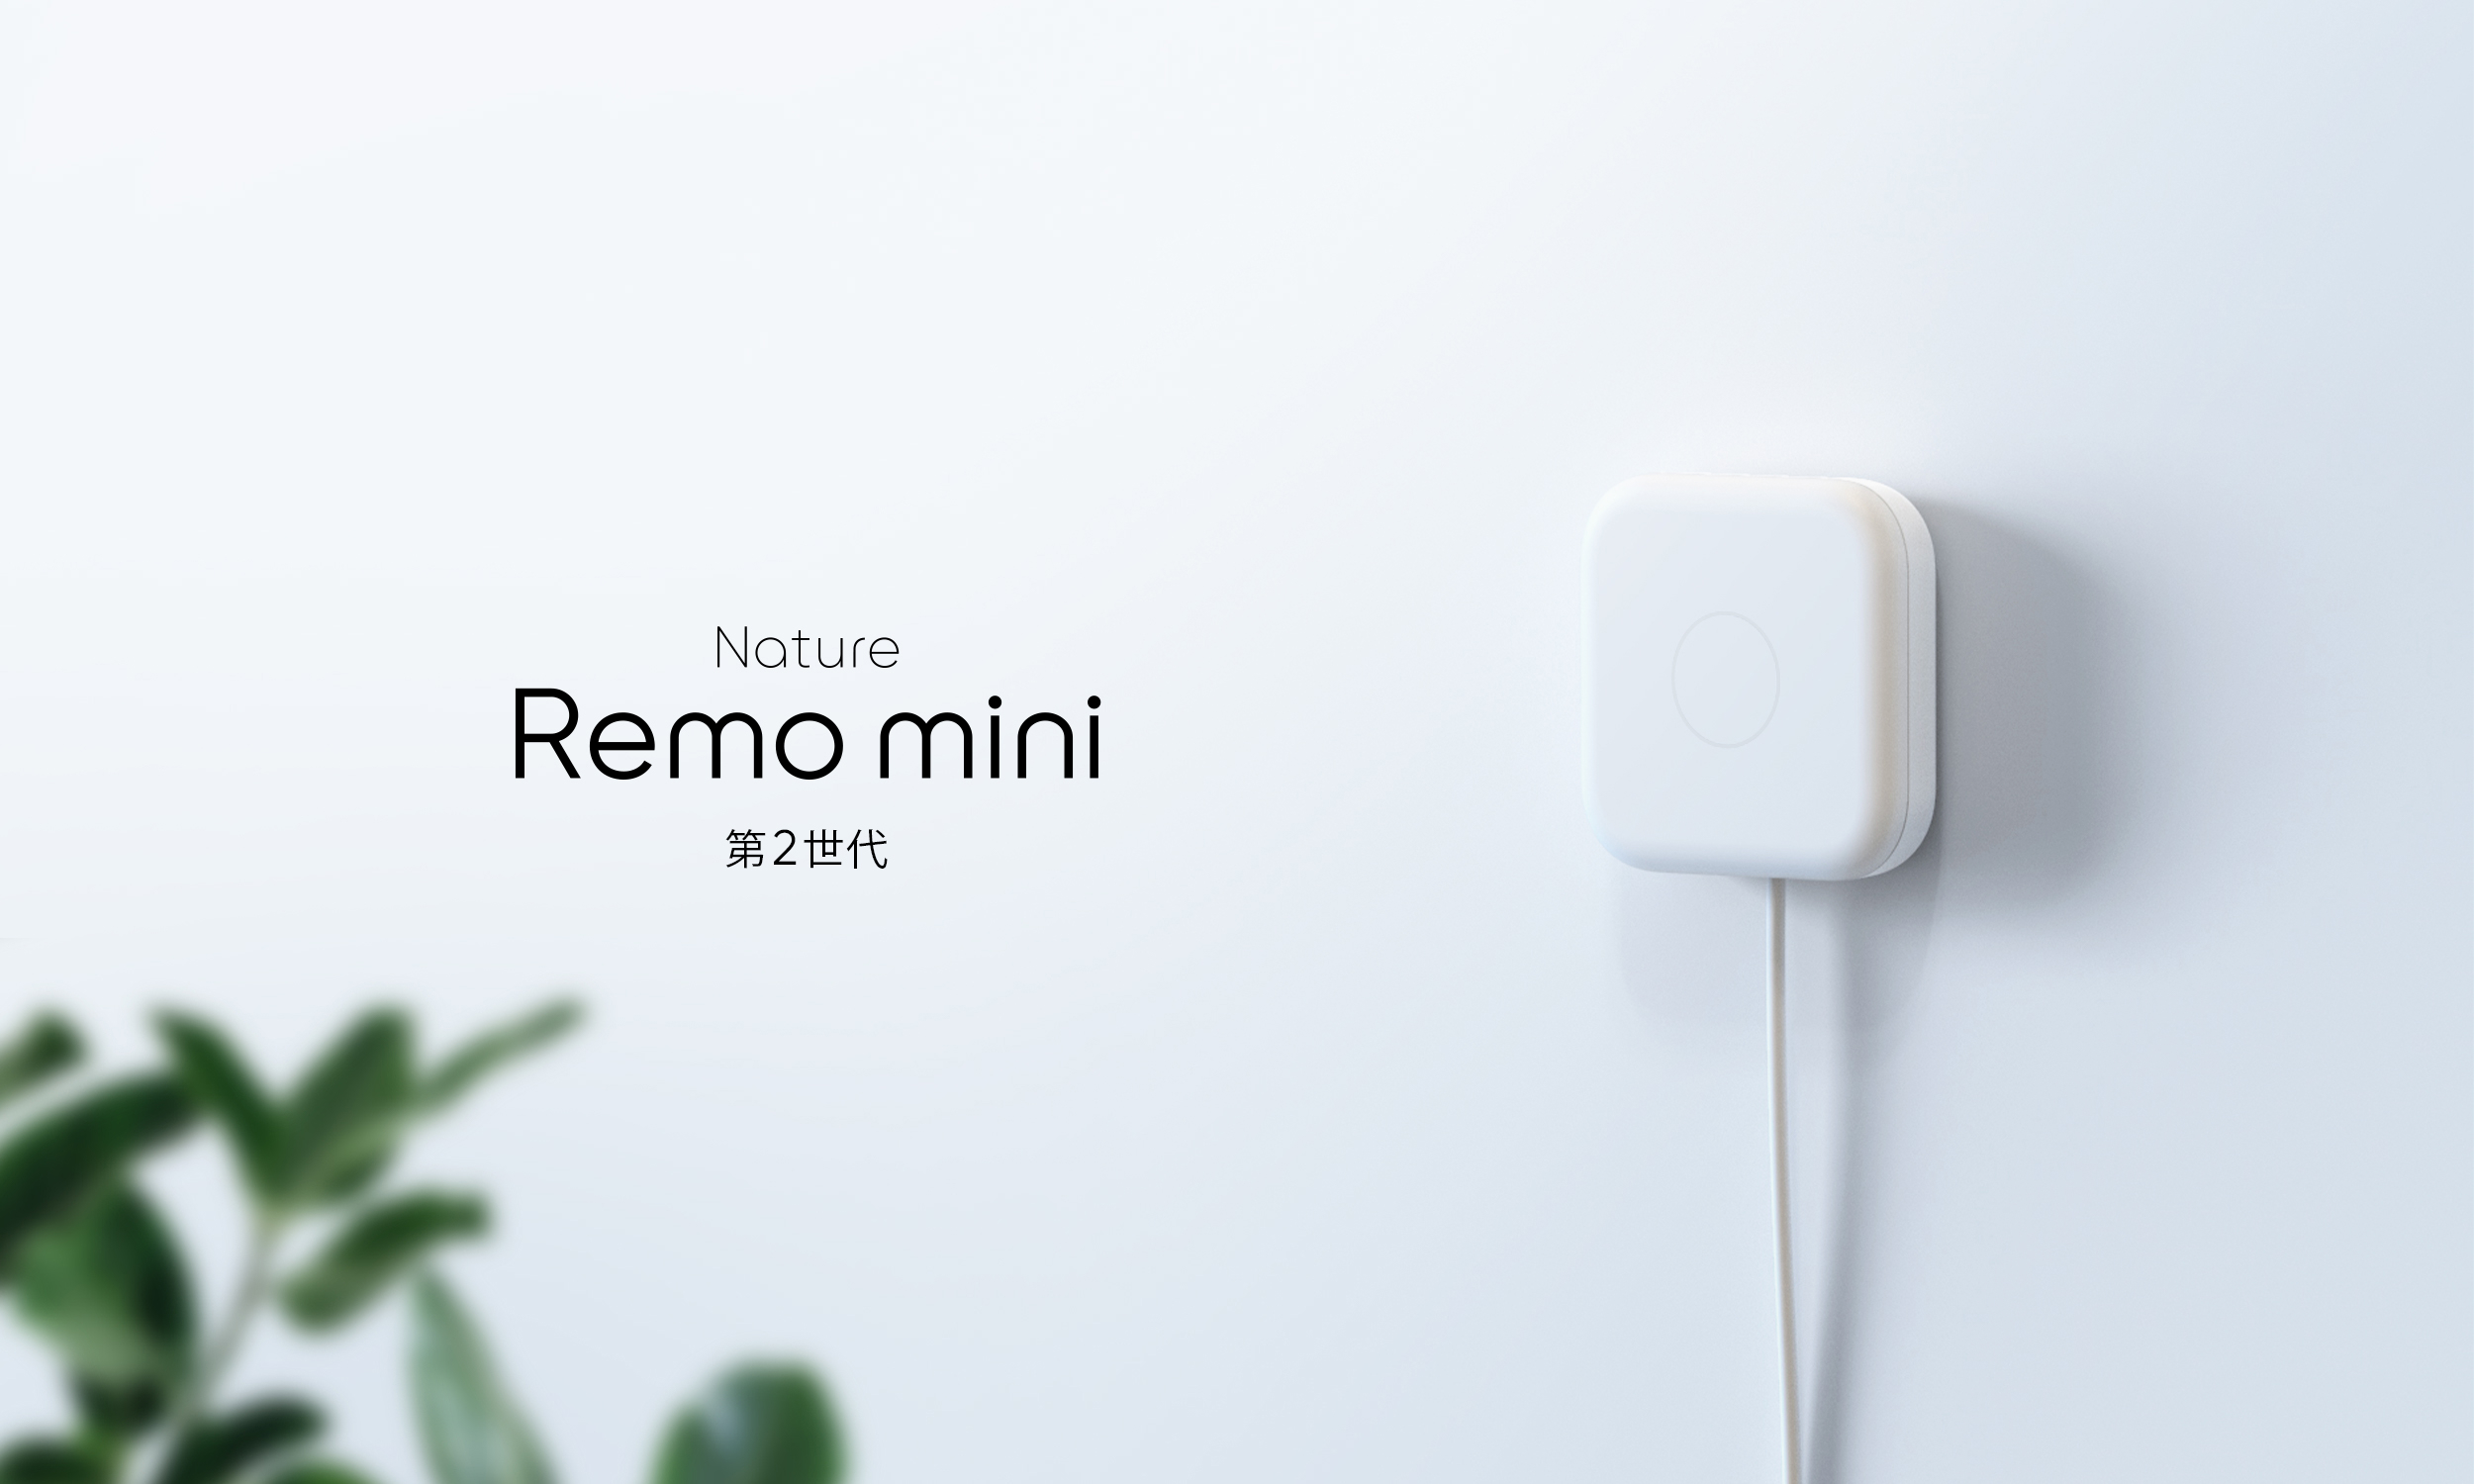 スマートリモコン「Nature Remo mini 2」を発売〜赤外線飛距離２倍 